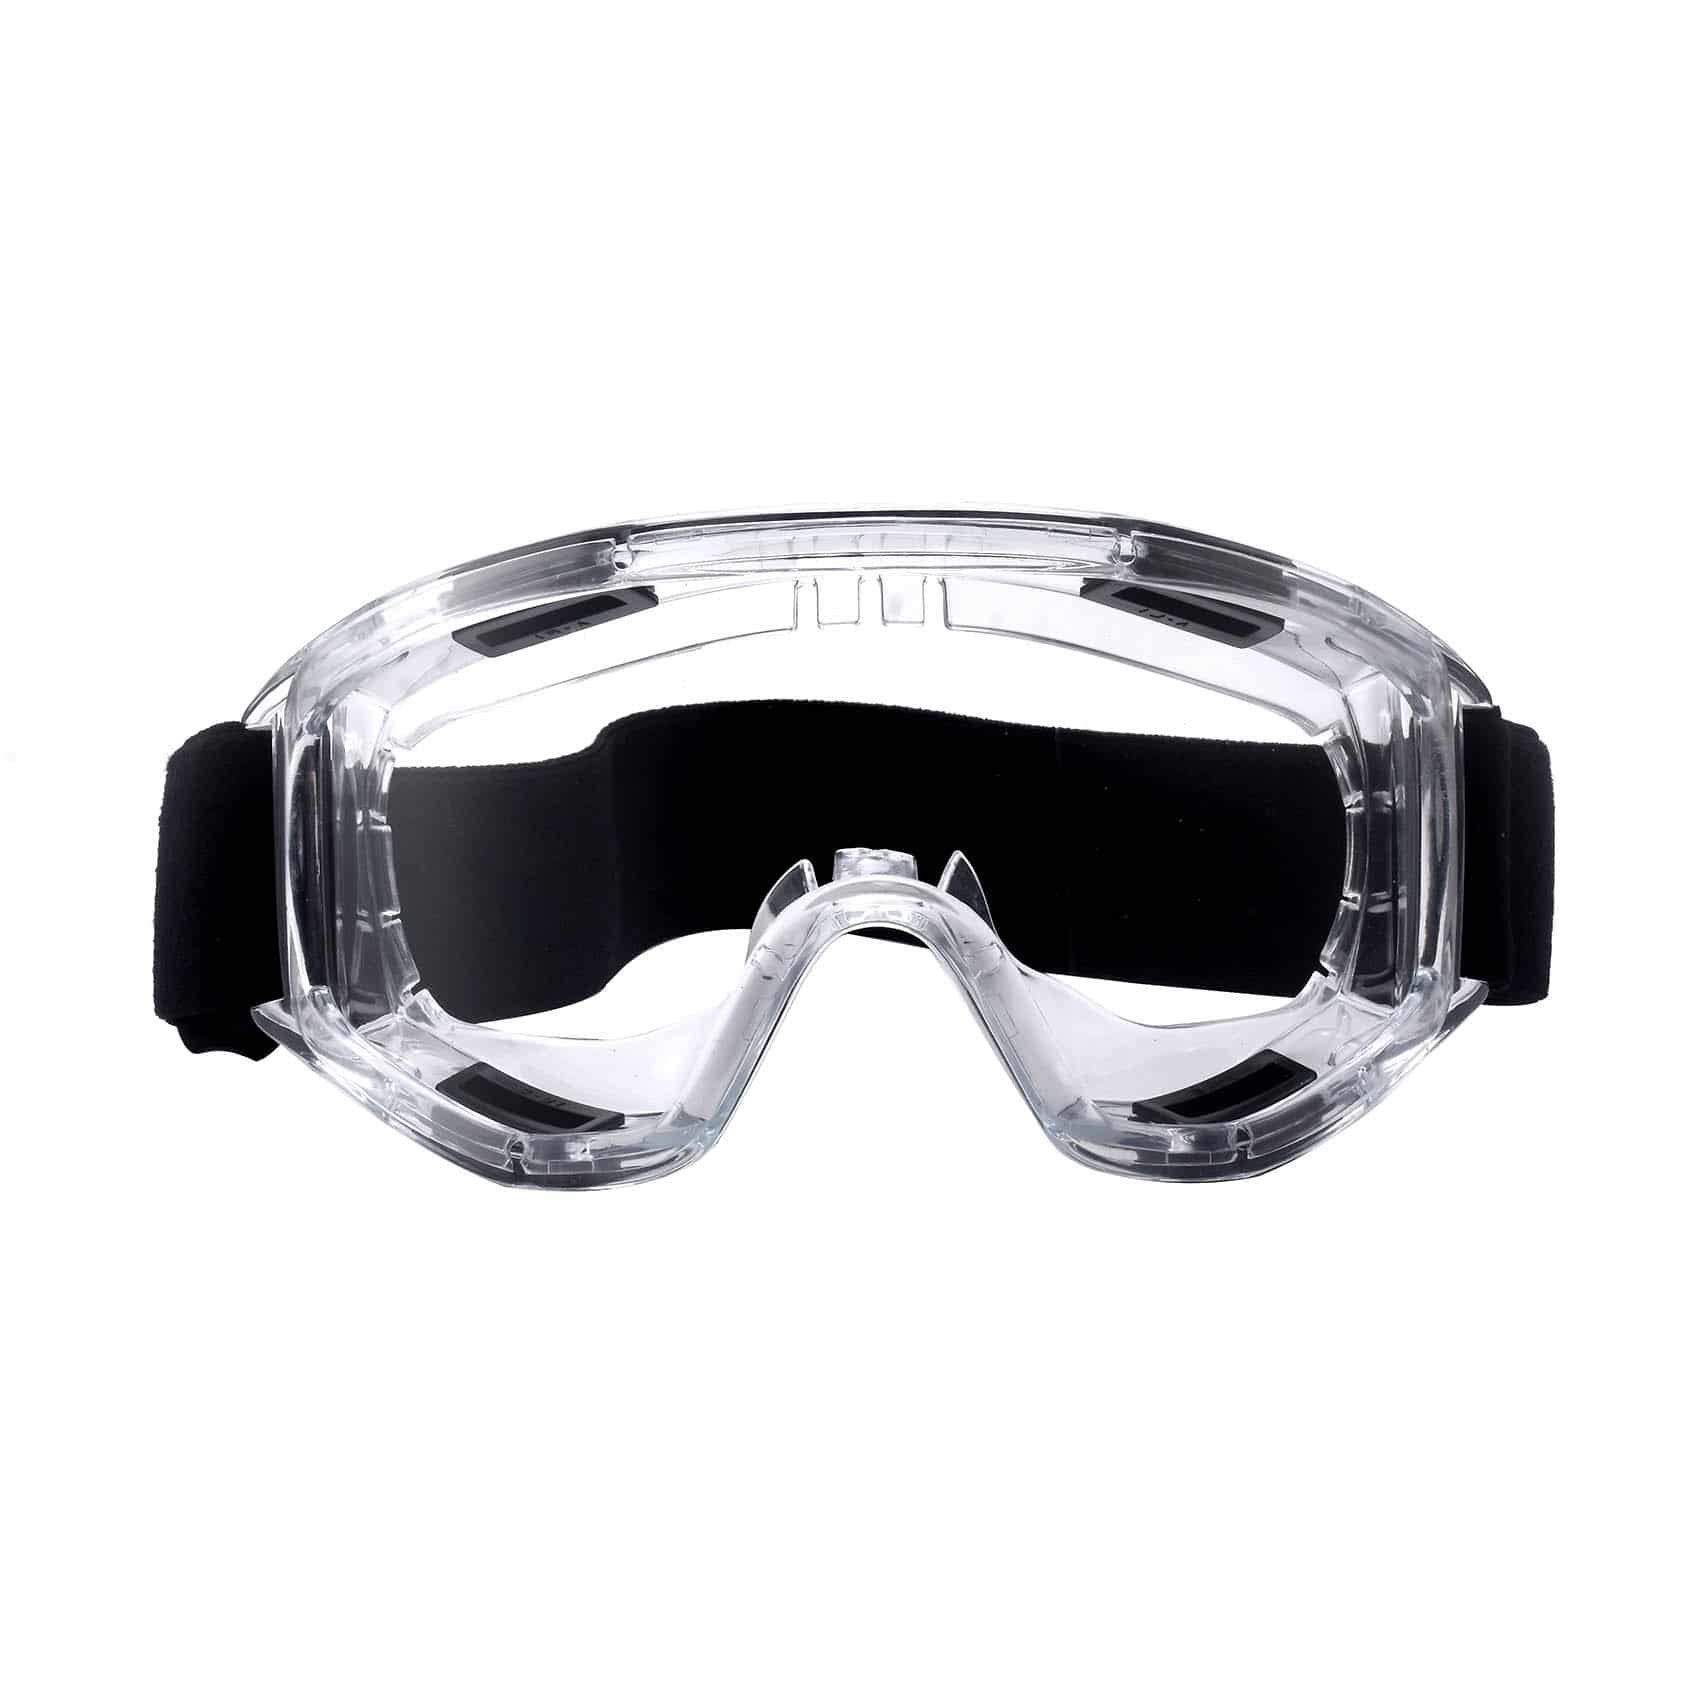 Storm Protective Goggles - PMedi.com